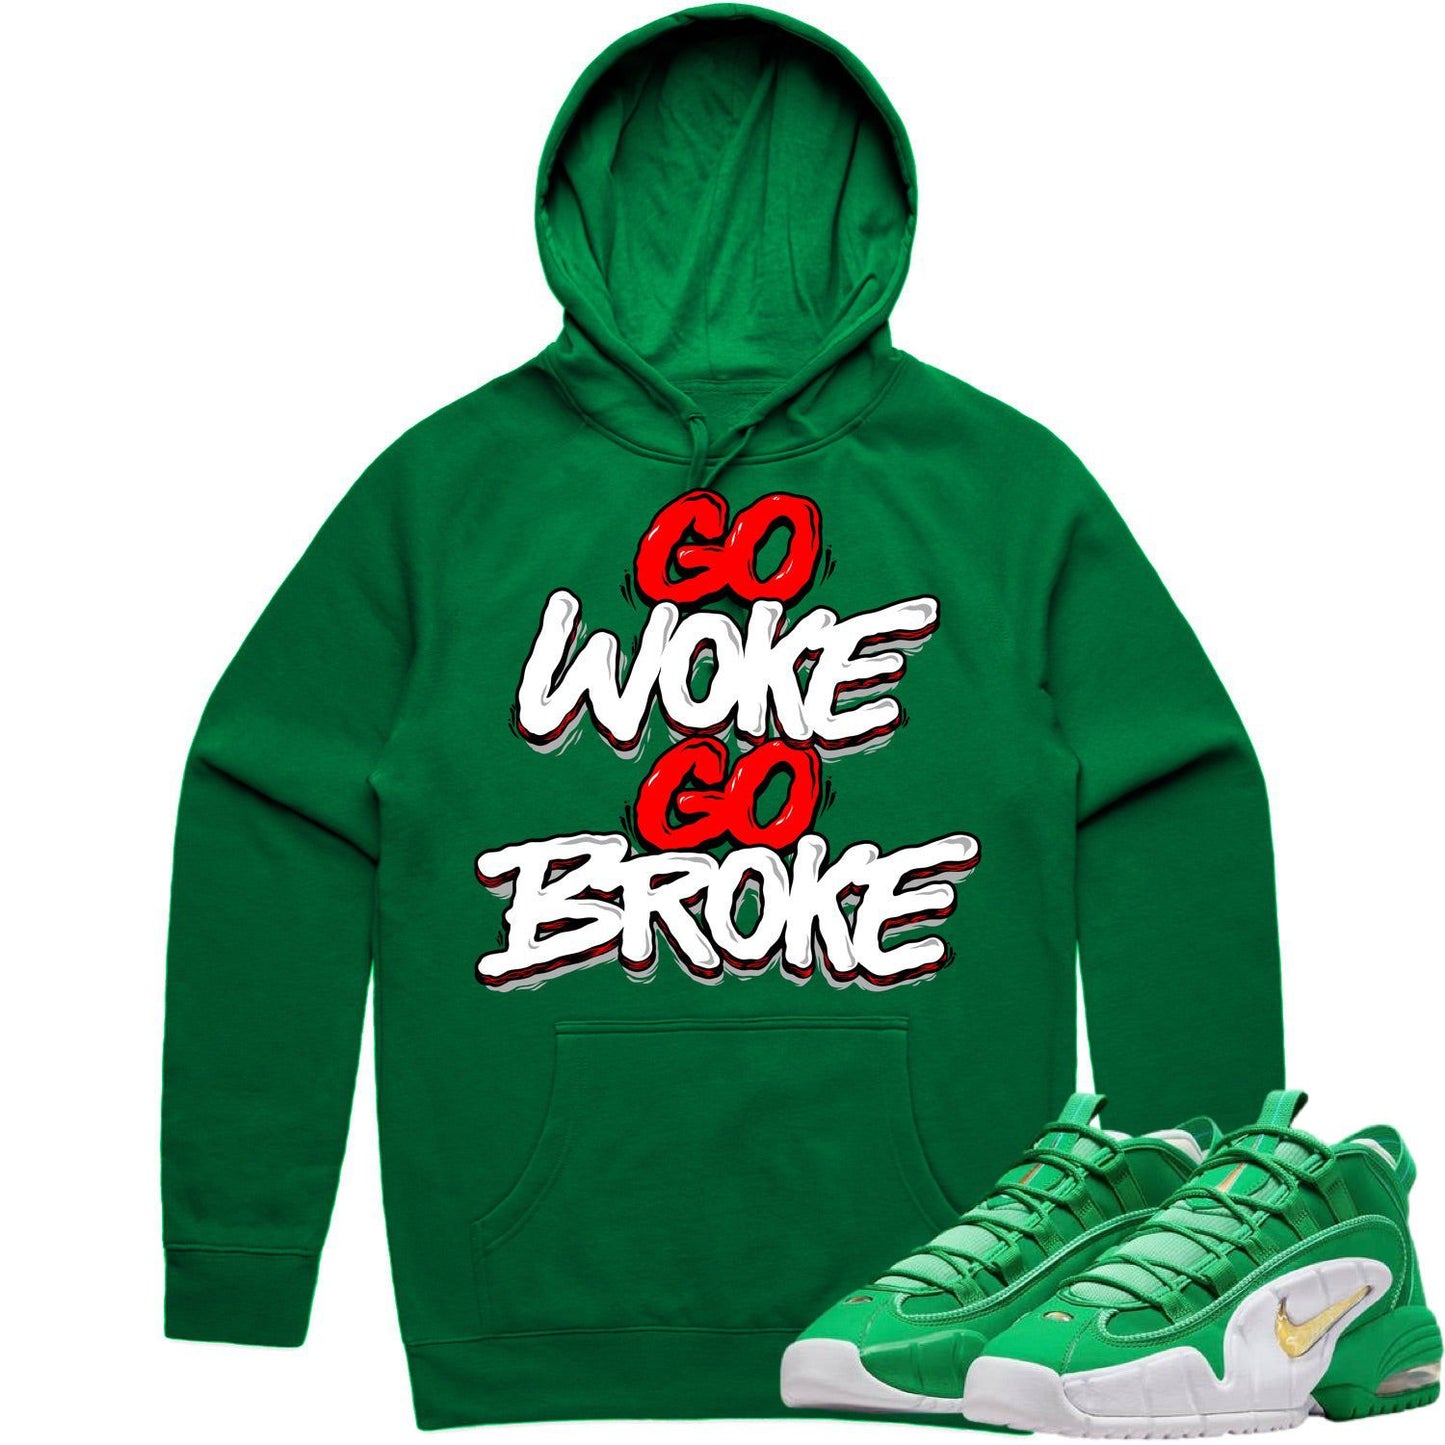 Penny 1 Stadium Green Hoodie - Penny 1s Hoodie - Go Woke Go Broke